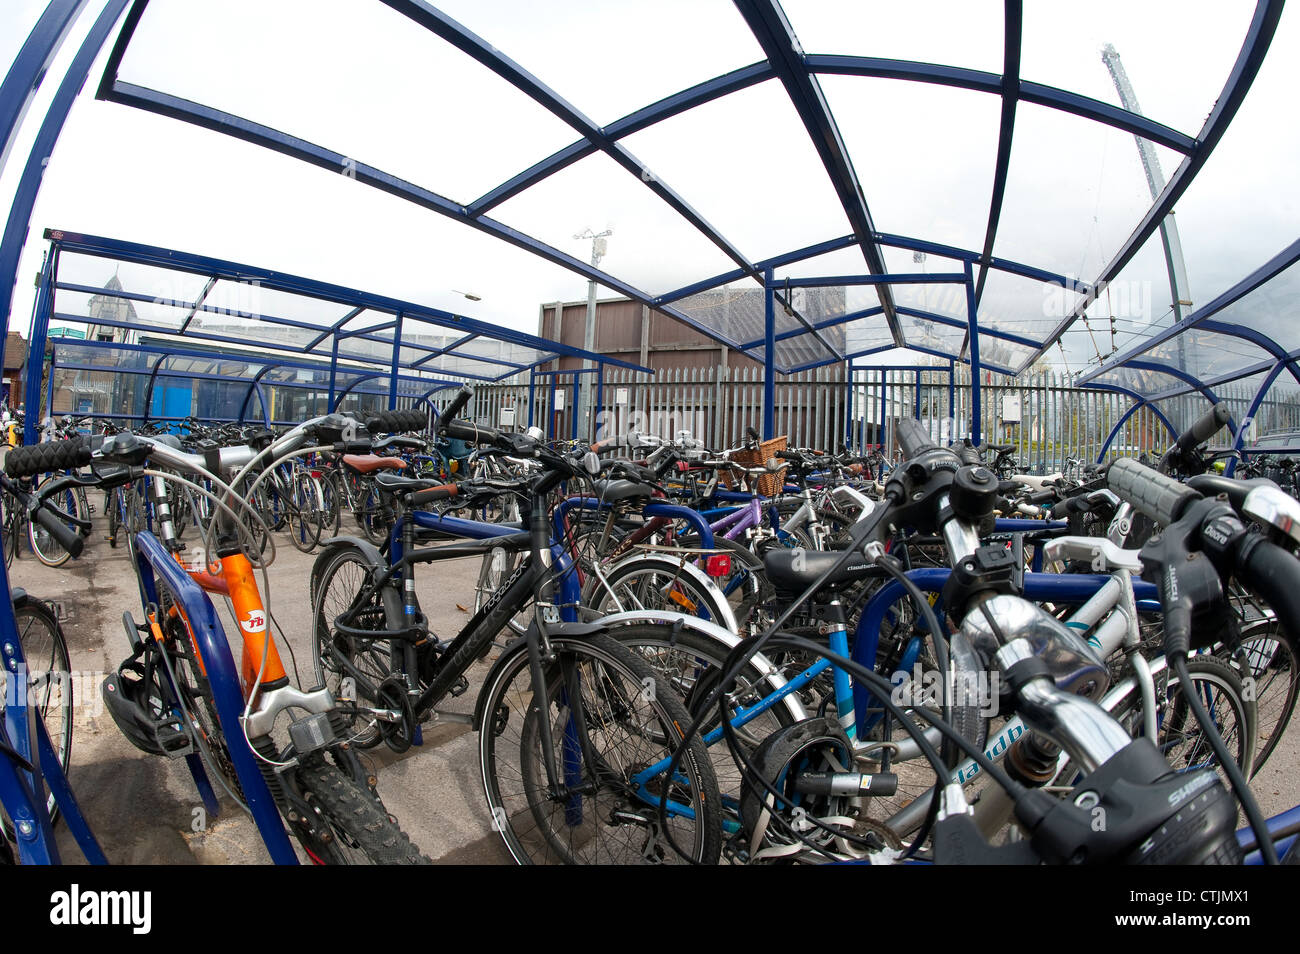 Aparcamiento De Bicicletas Cubierto En Una Estación De Tren En Los Países  Bajos Fotos, retratos, imágenes y fotografía de archivo libres de derecho.  Image 30672765